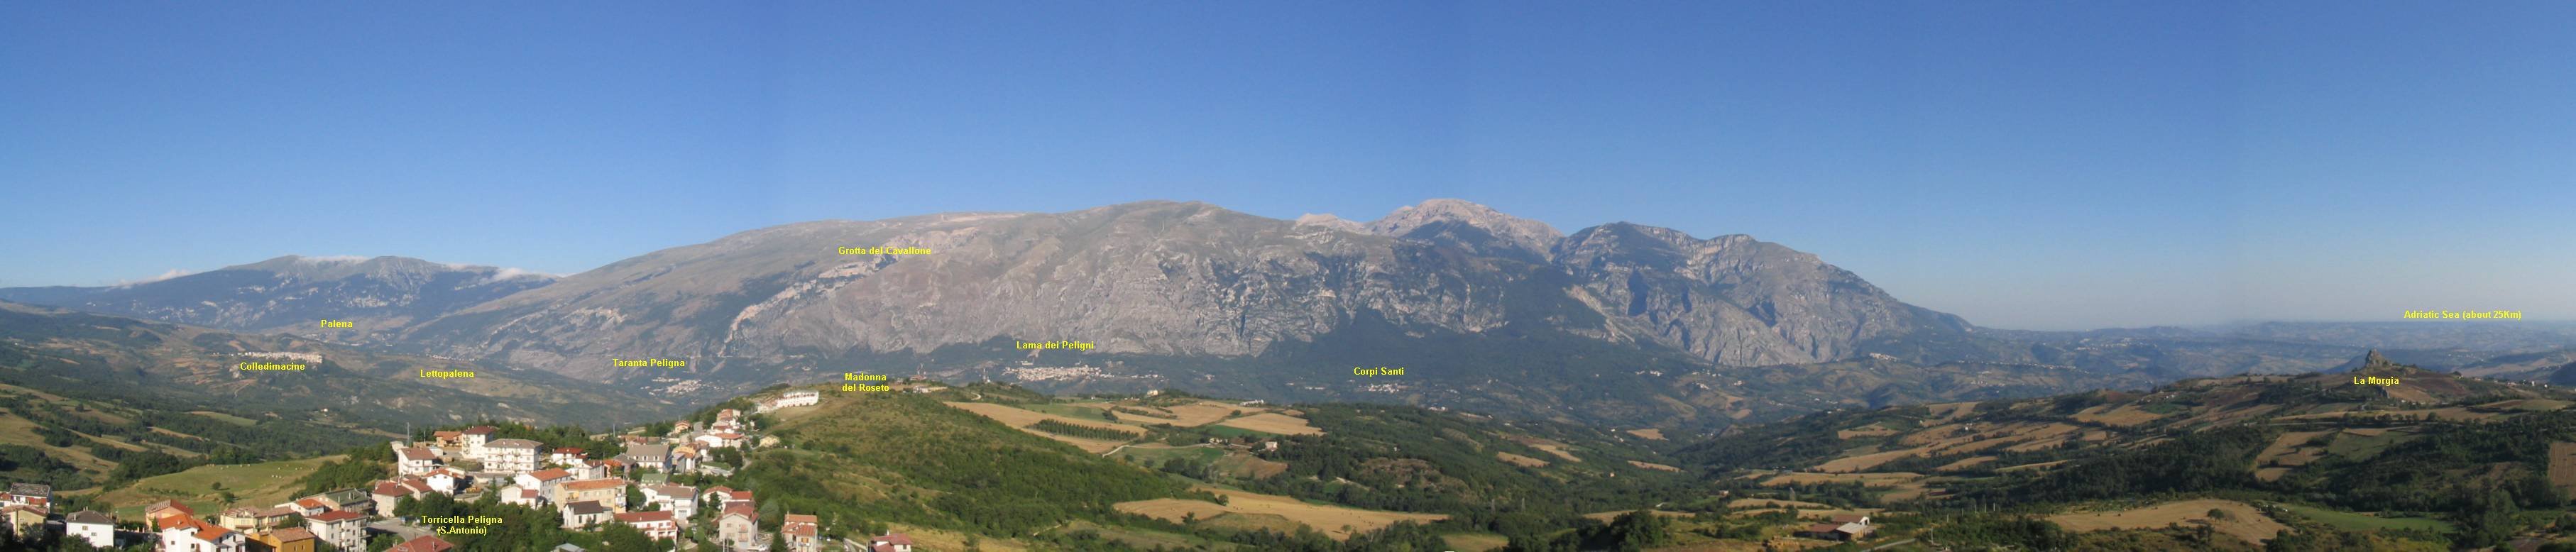 Maiella Panoramic View, by Silvio DiPaolo